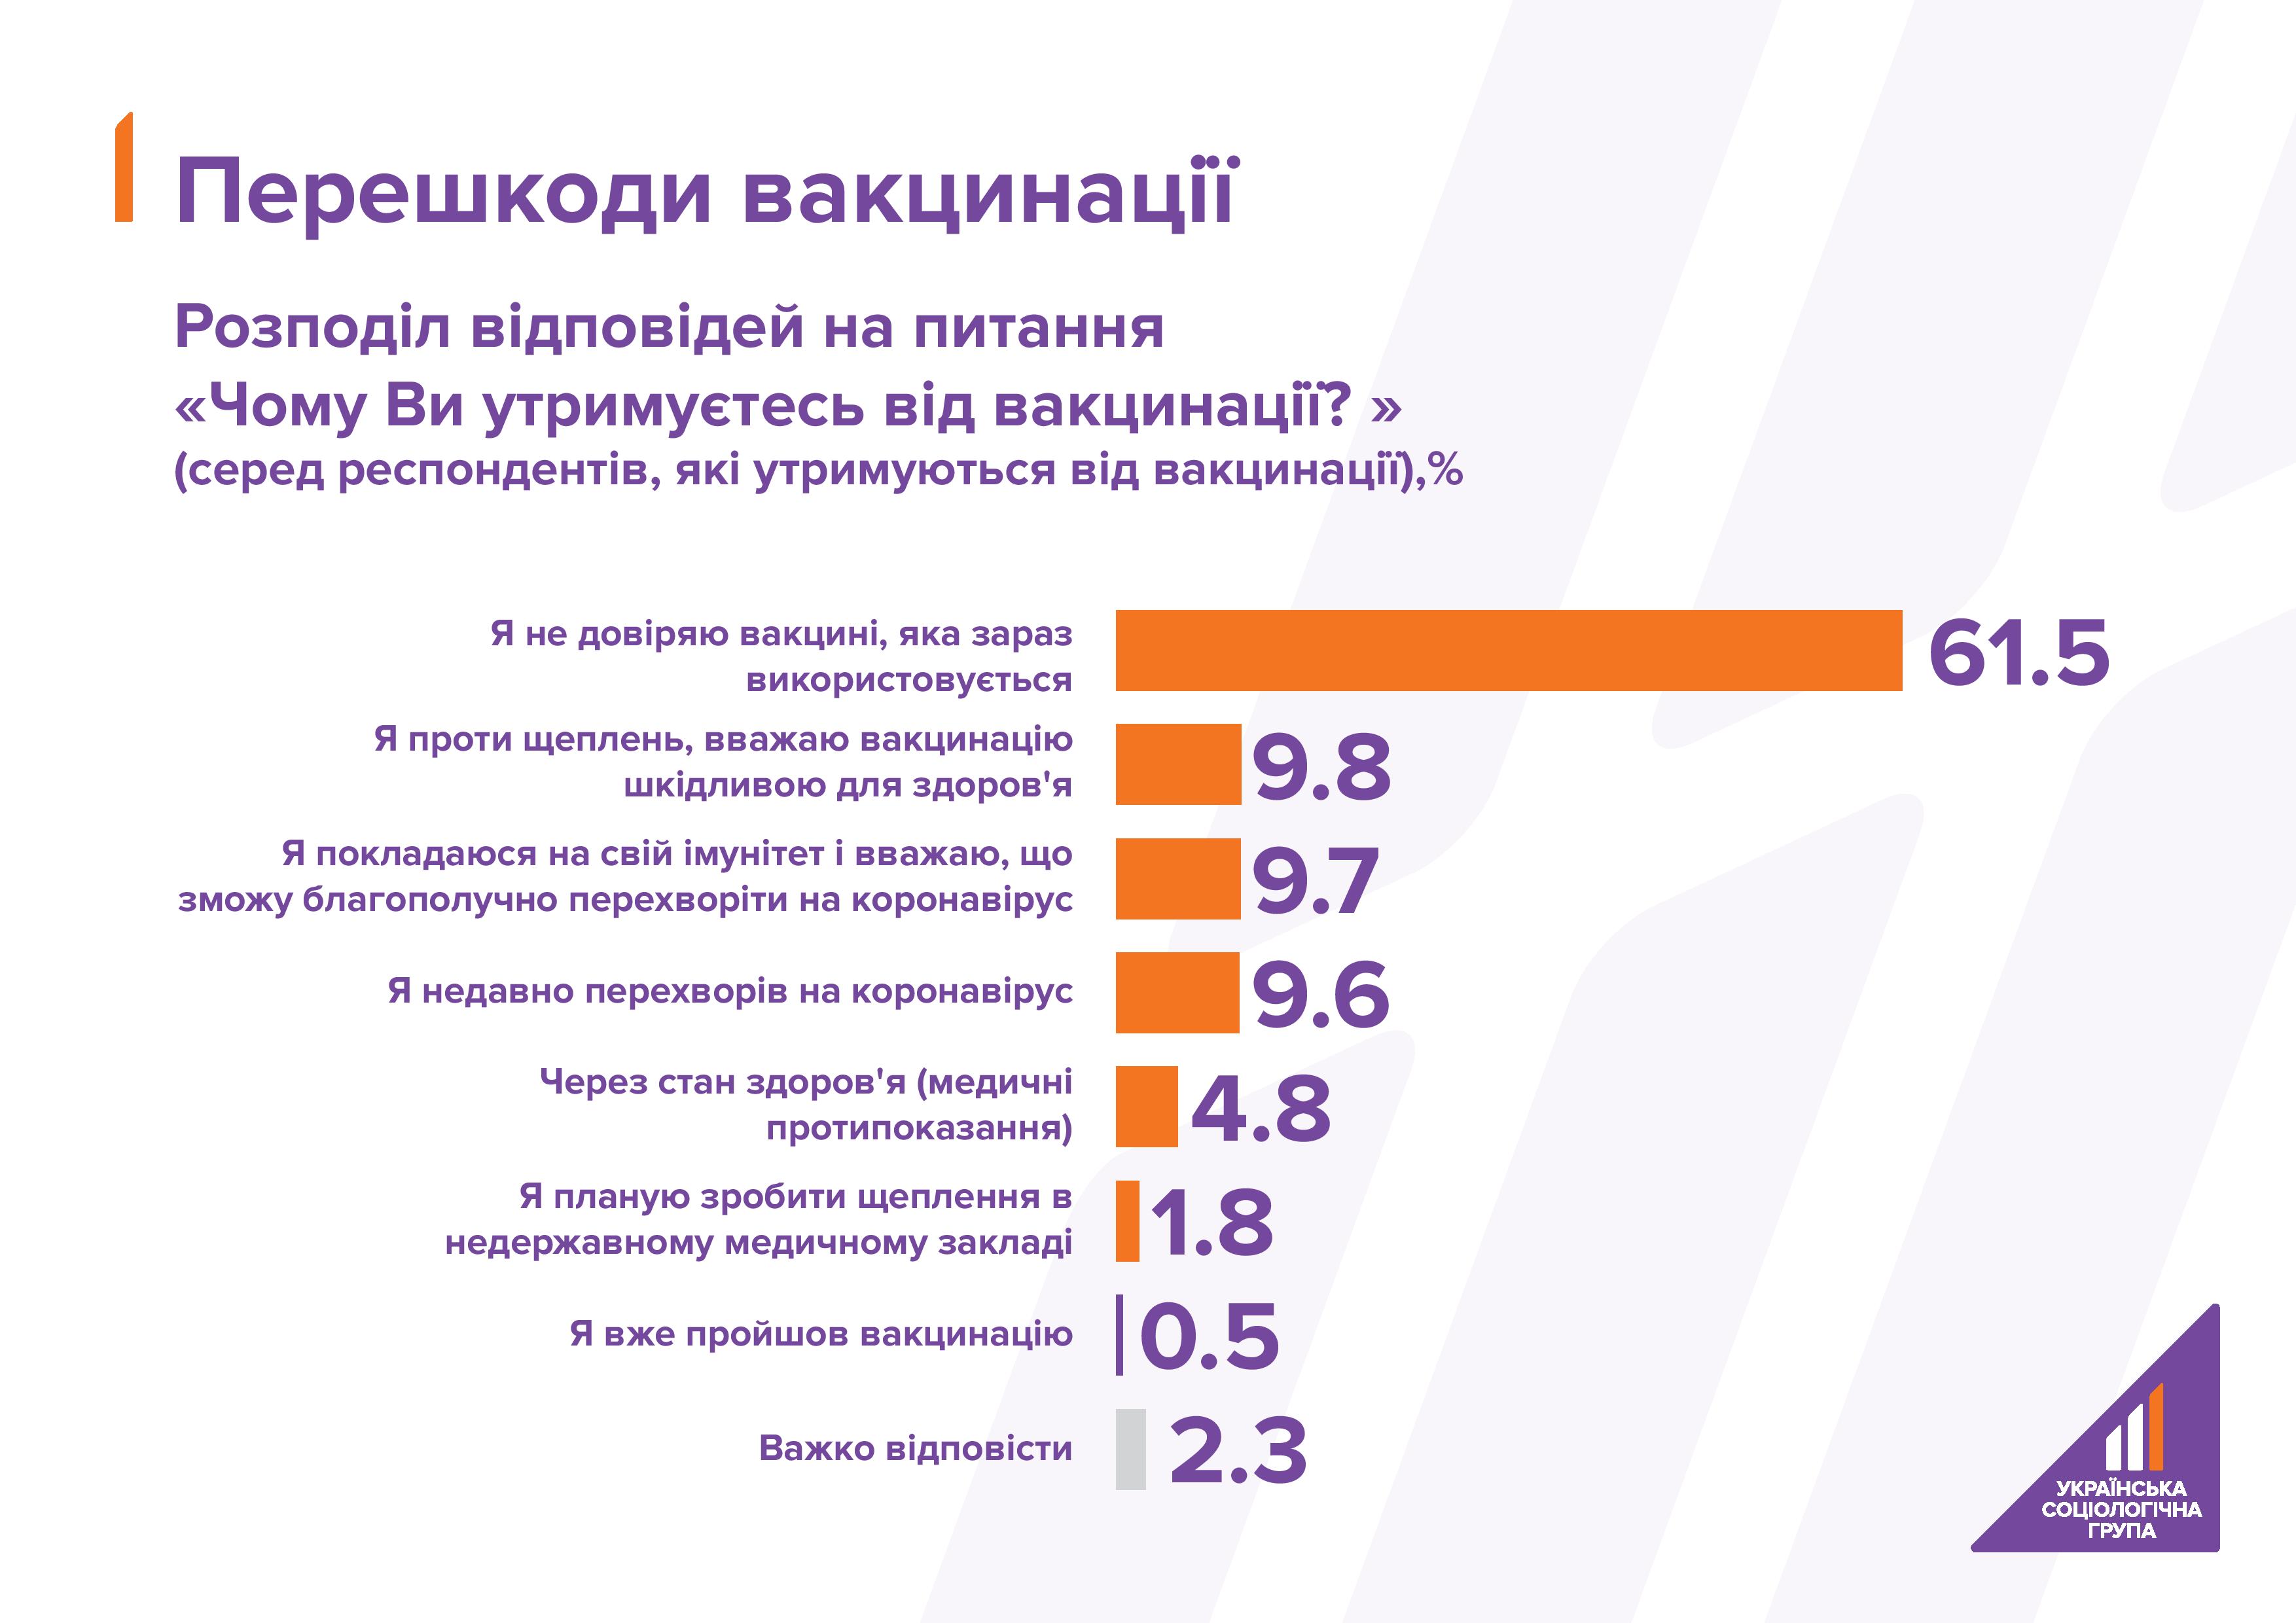 Каждый четвертый украинец не будет вакцинироваться от коронавируса - опрос. Скриншот